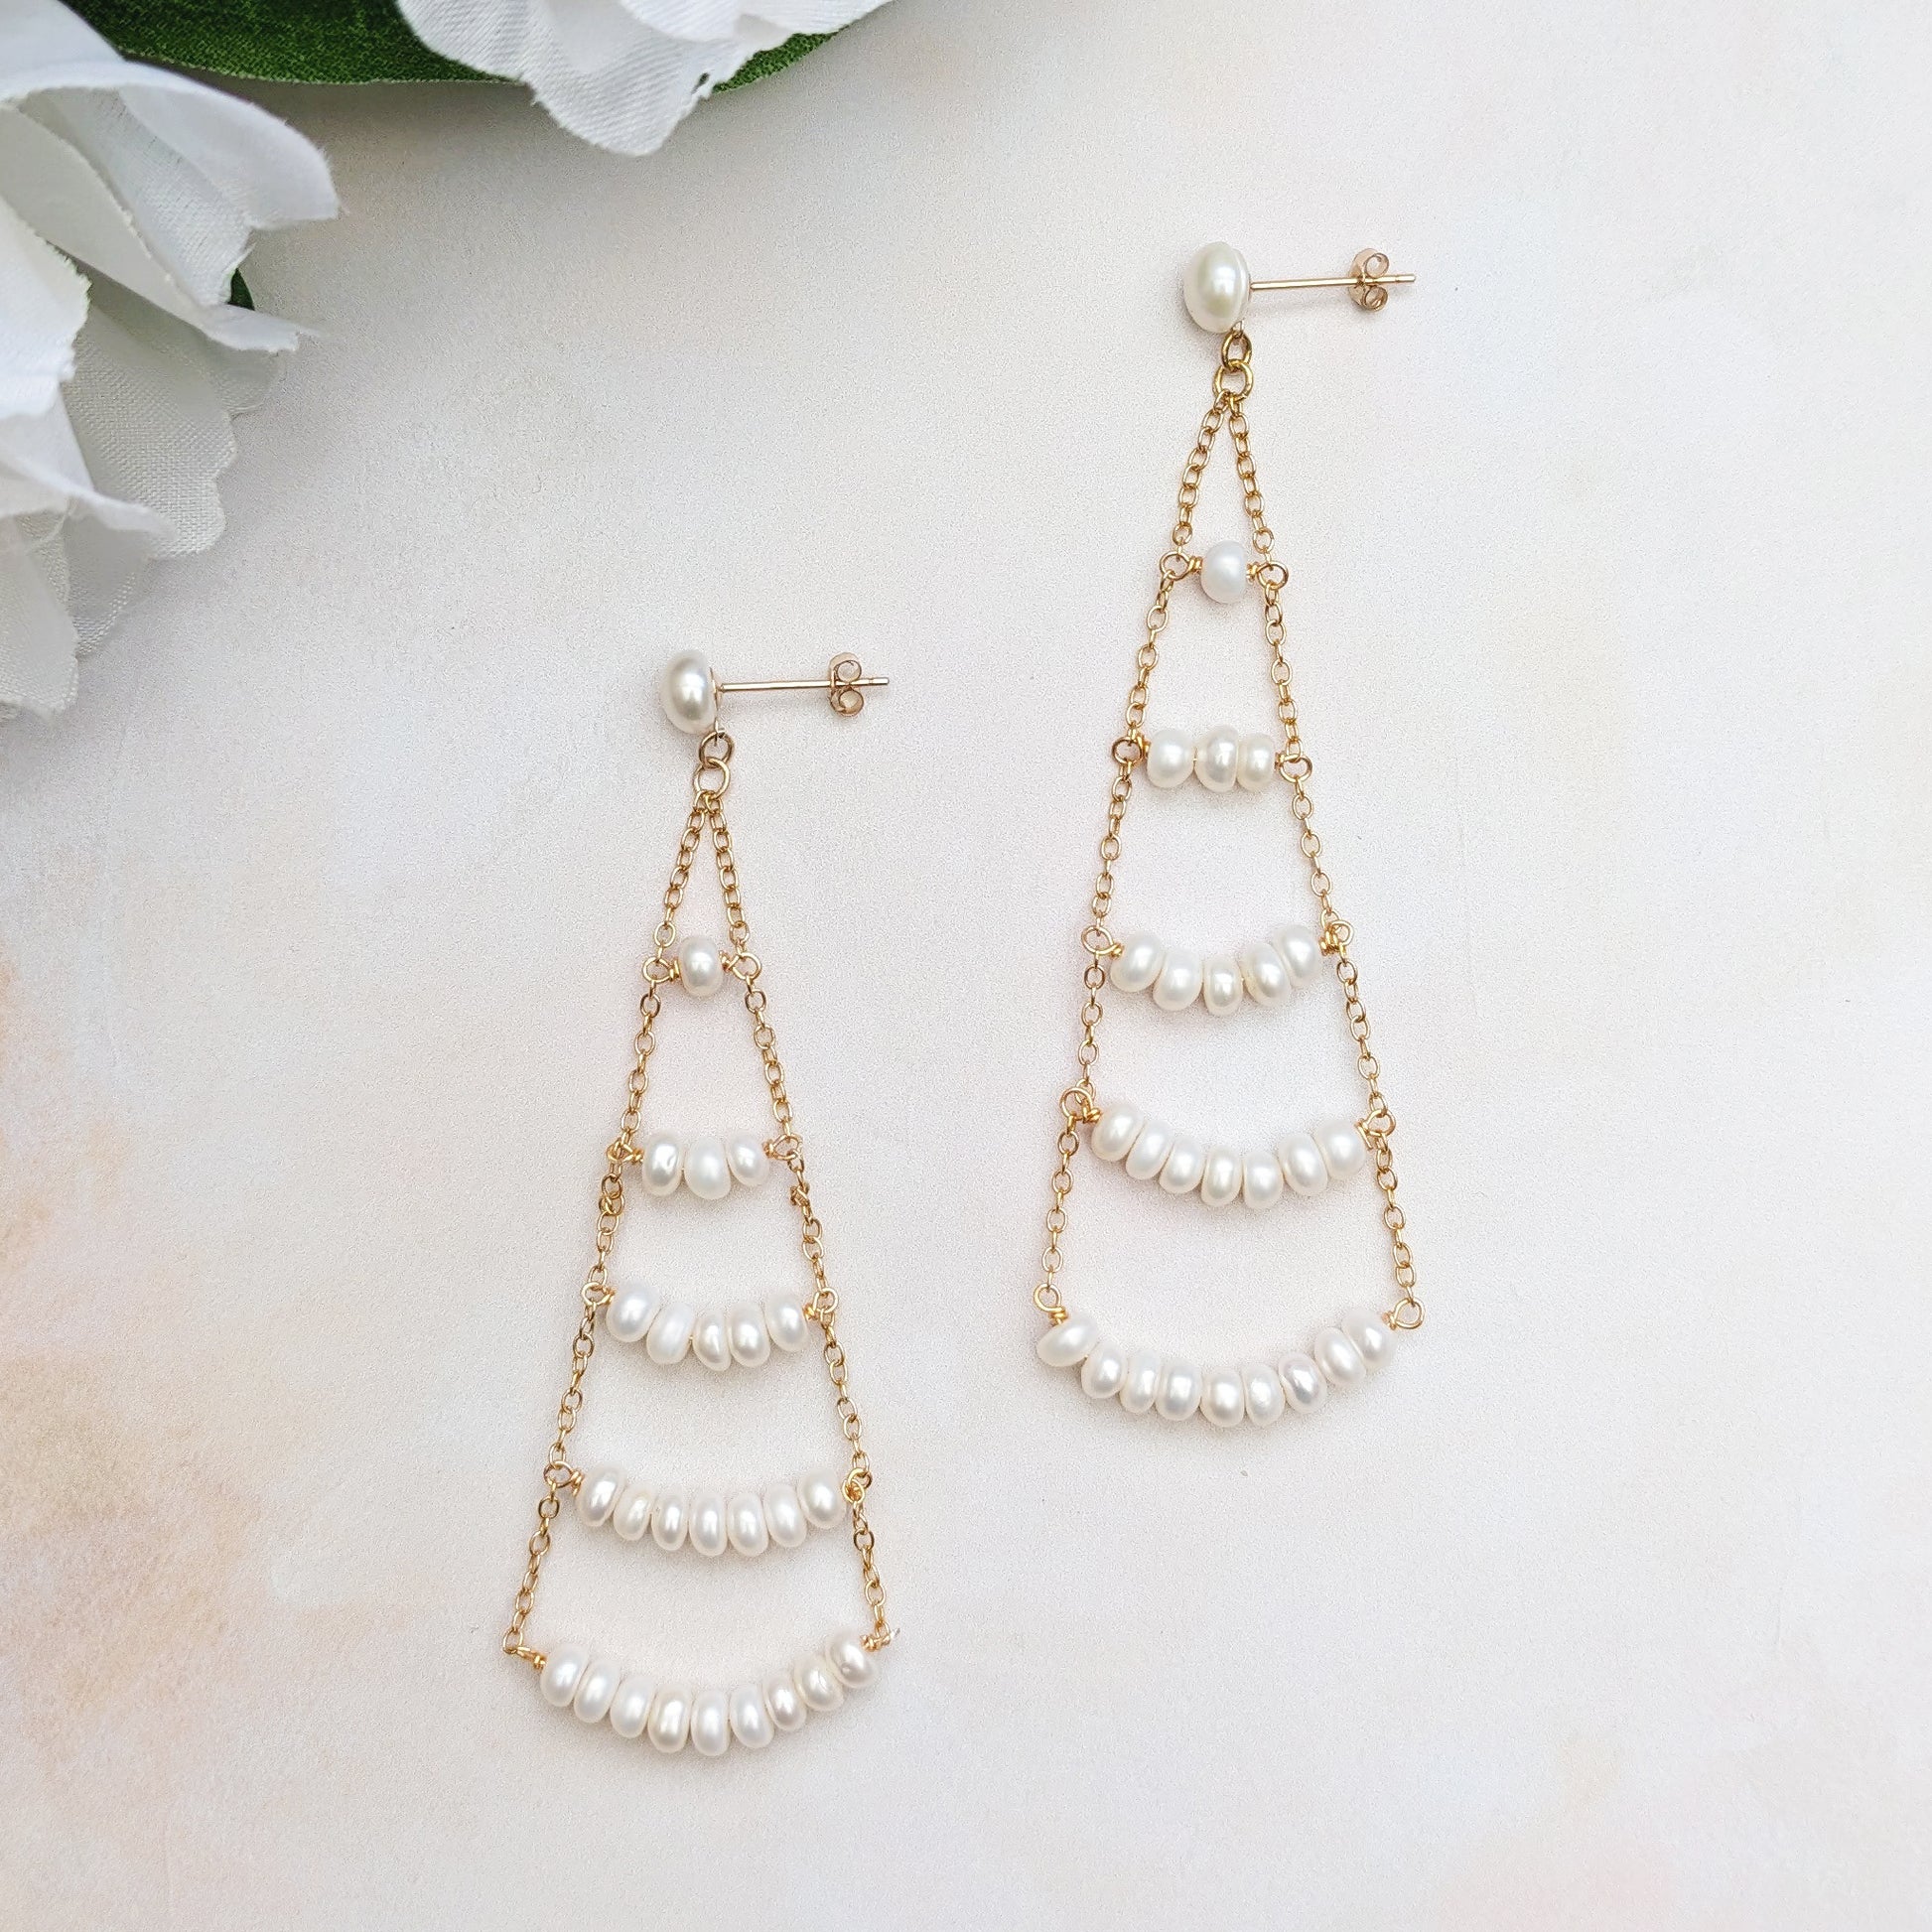 Modern Pearl chandelier earrings for weddings - Susie warner